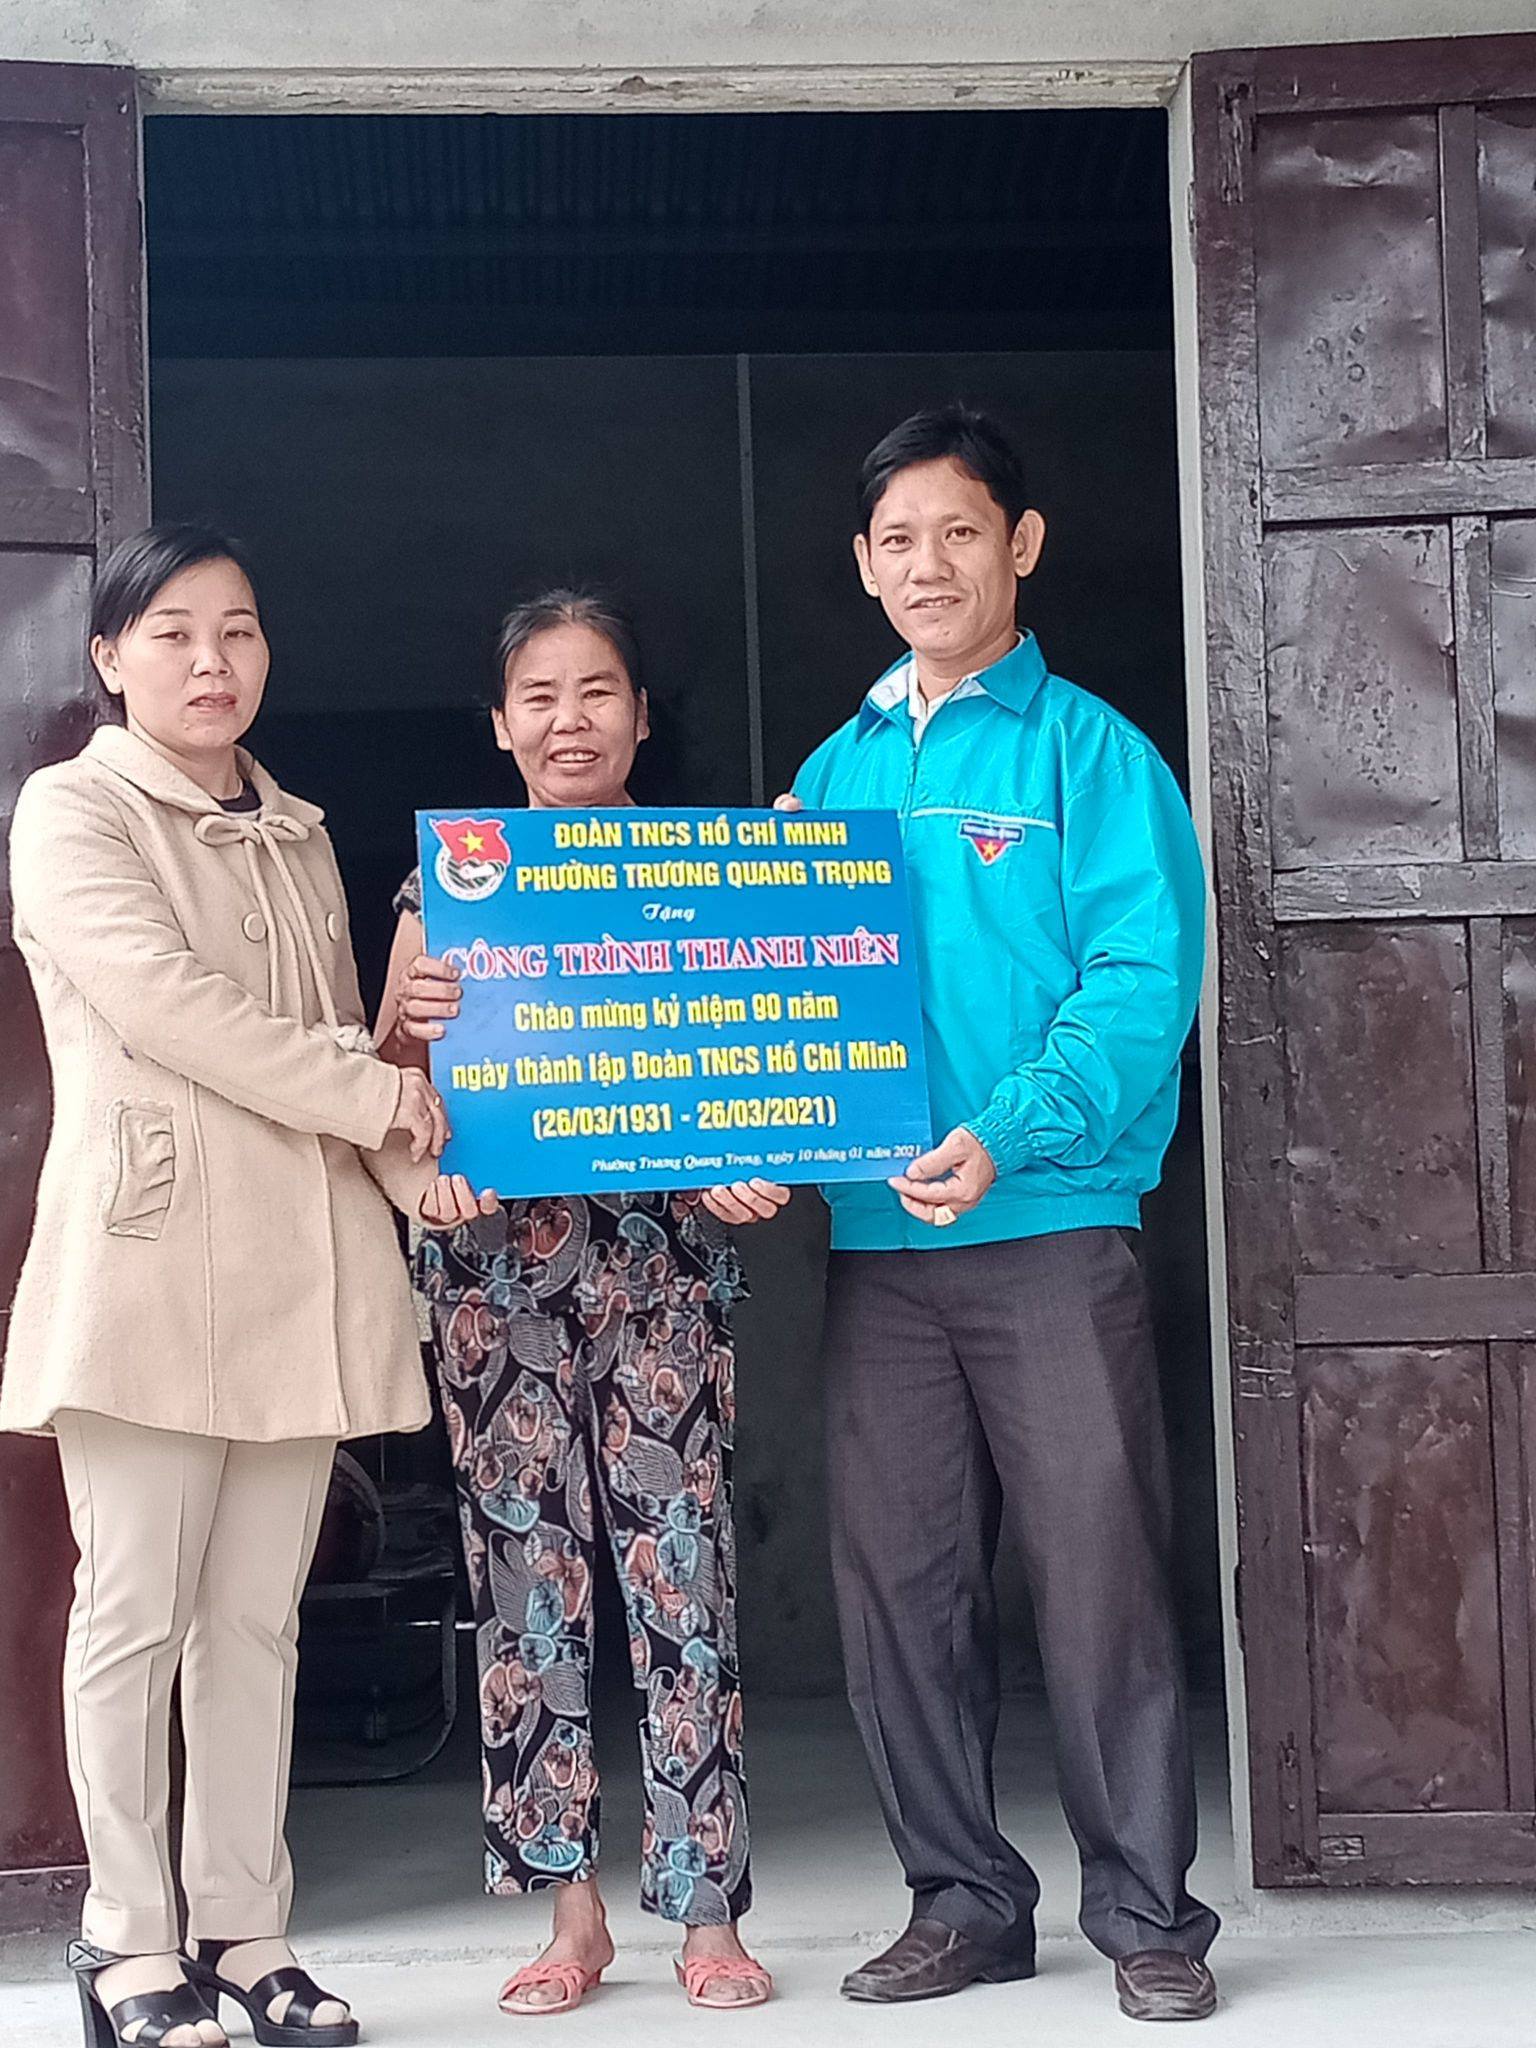 Đoàn phường Trương Quang Trọng thực hiện công trình thanh niên sửa chữa nhà hộ cận nghèo